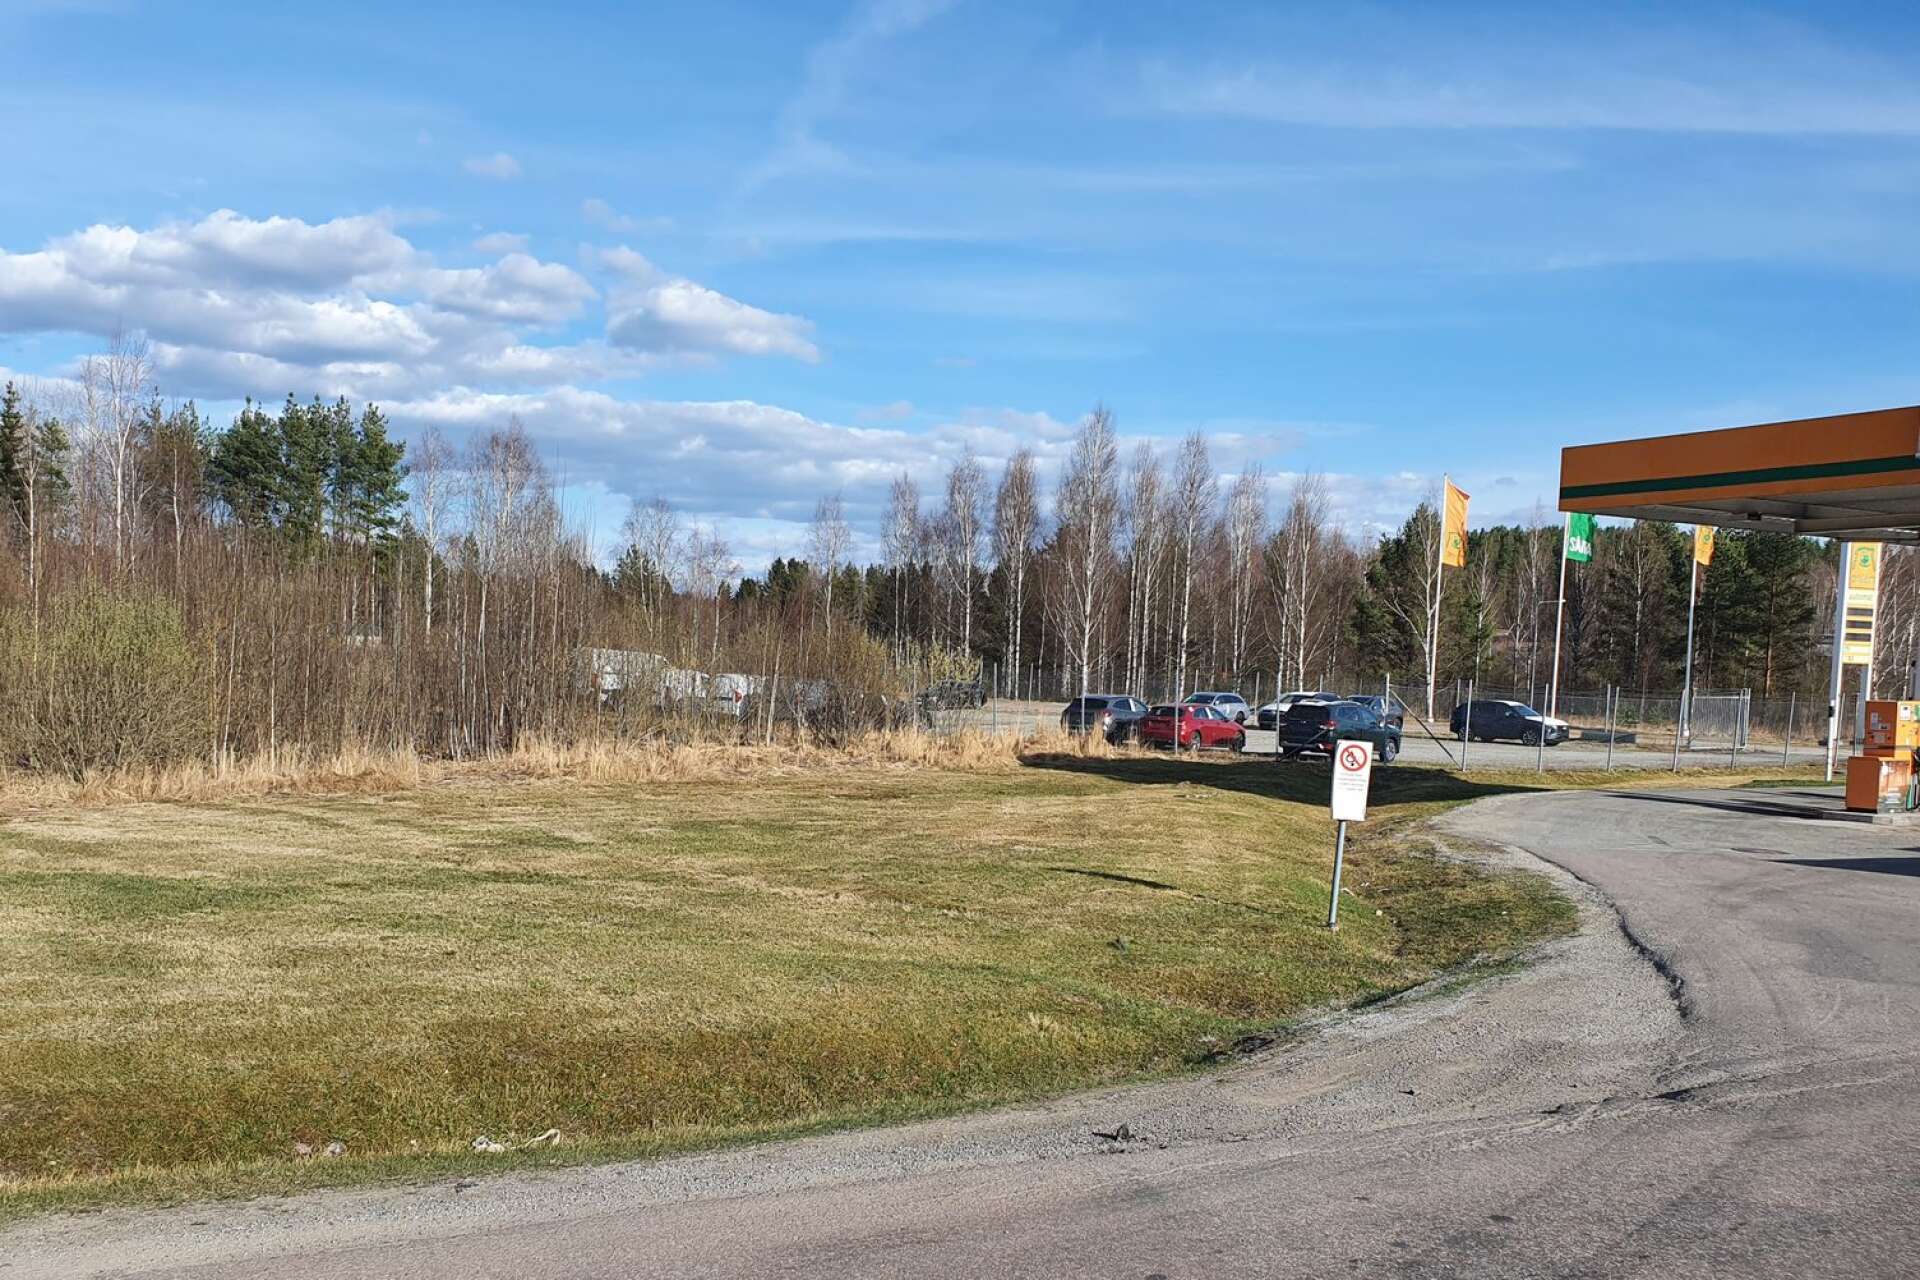 Här i skogsdungen mellan Långvaksvägen och riksväg 61, strax öster om Gunnarskogskorset, finns det intresse för en nyetablering med inriktning på livsmedelshandel.